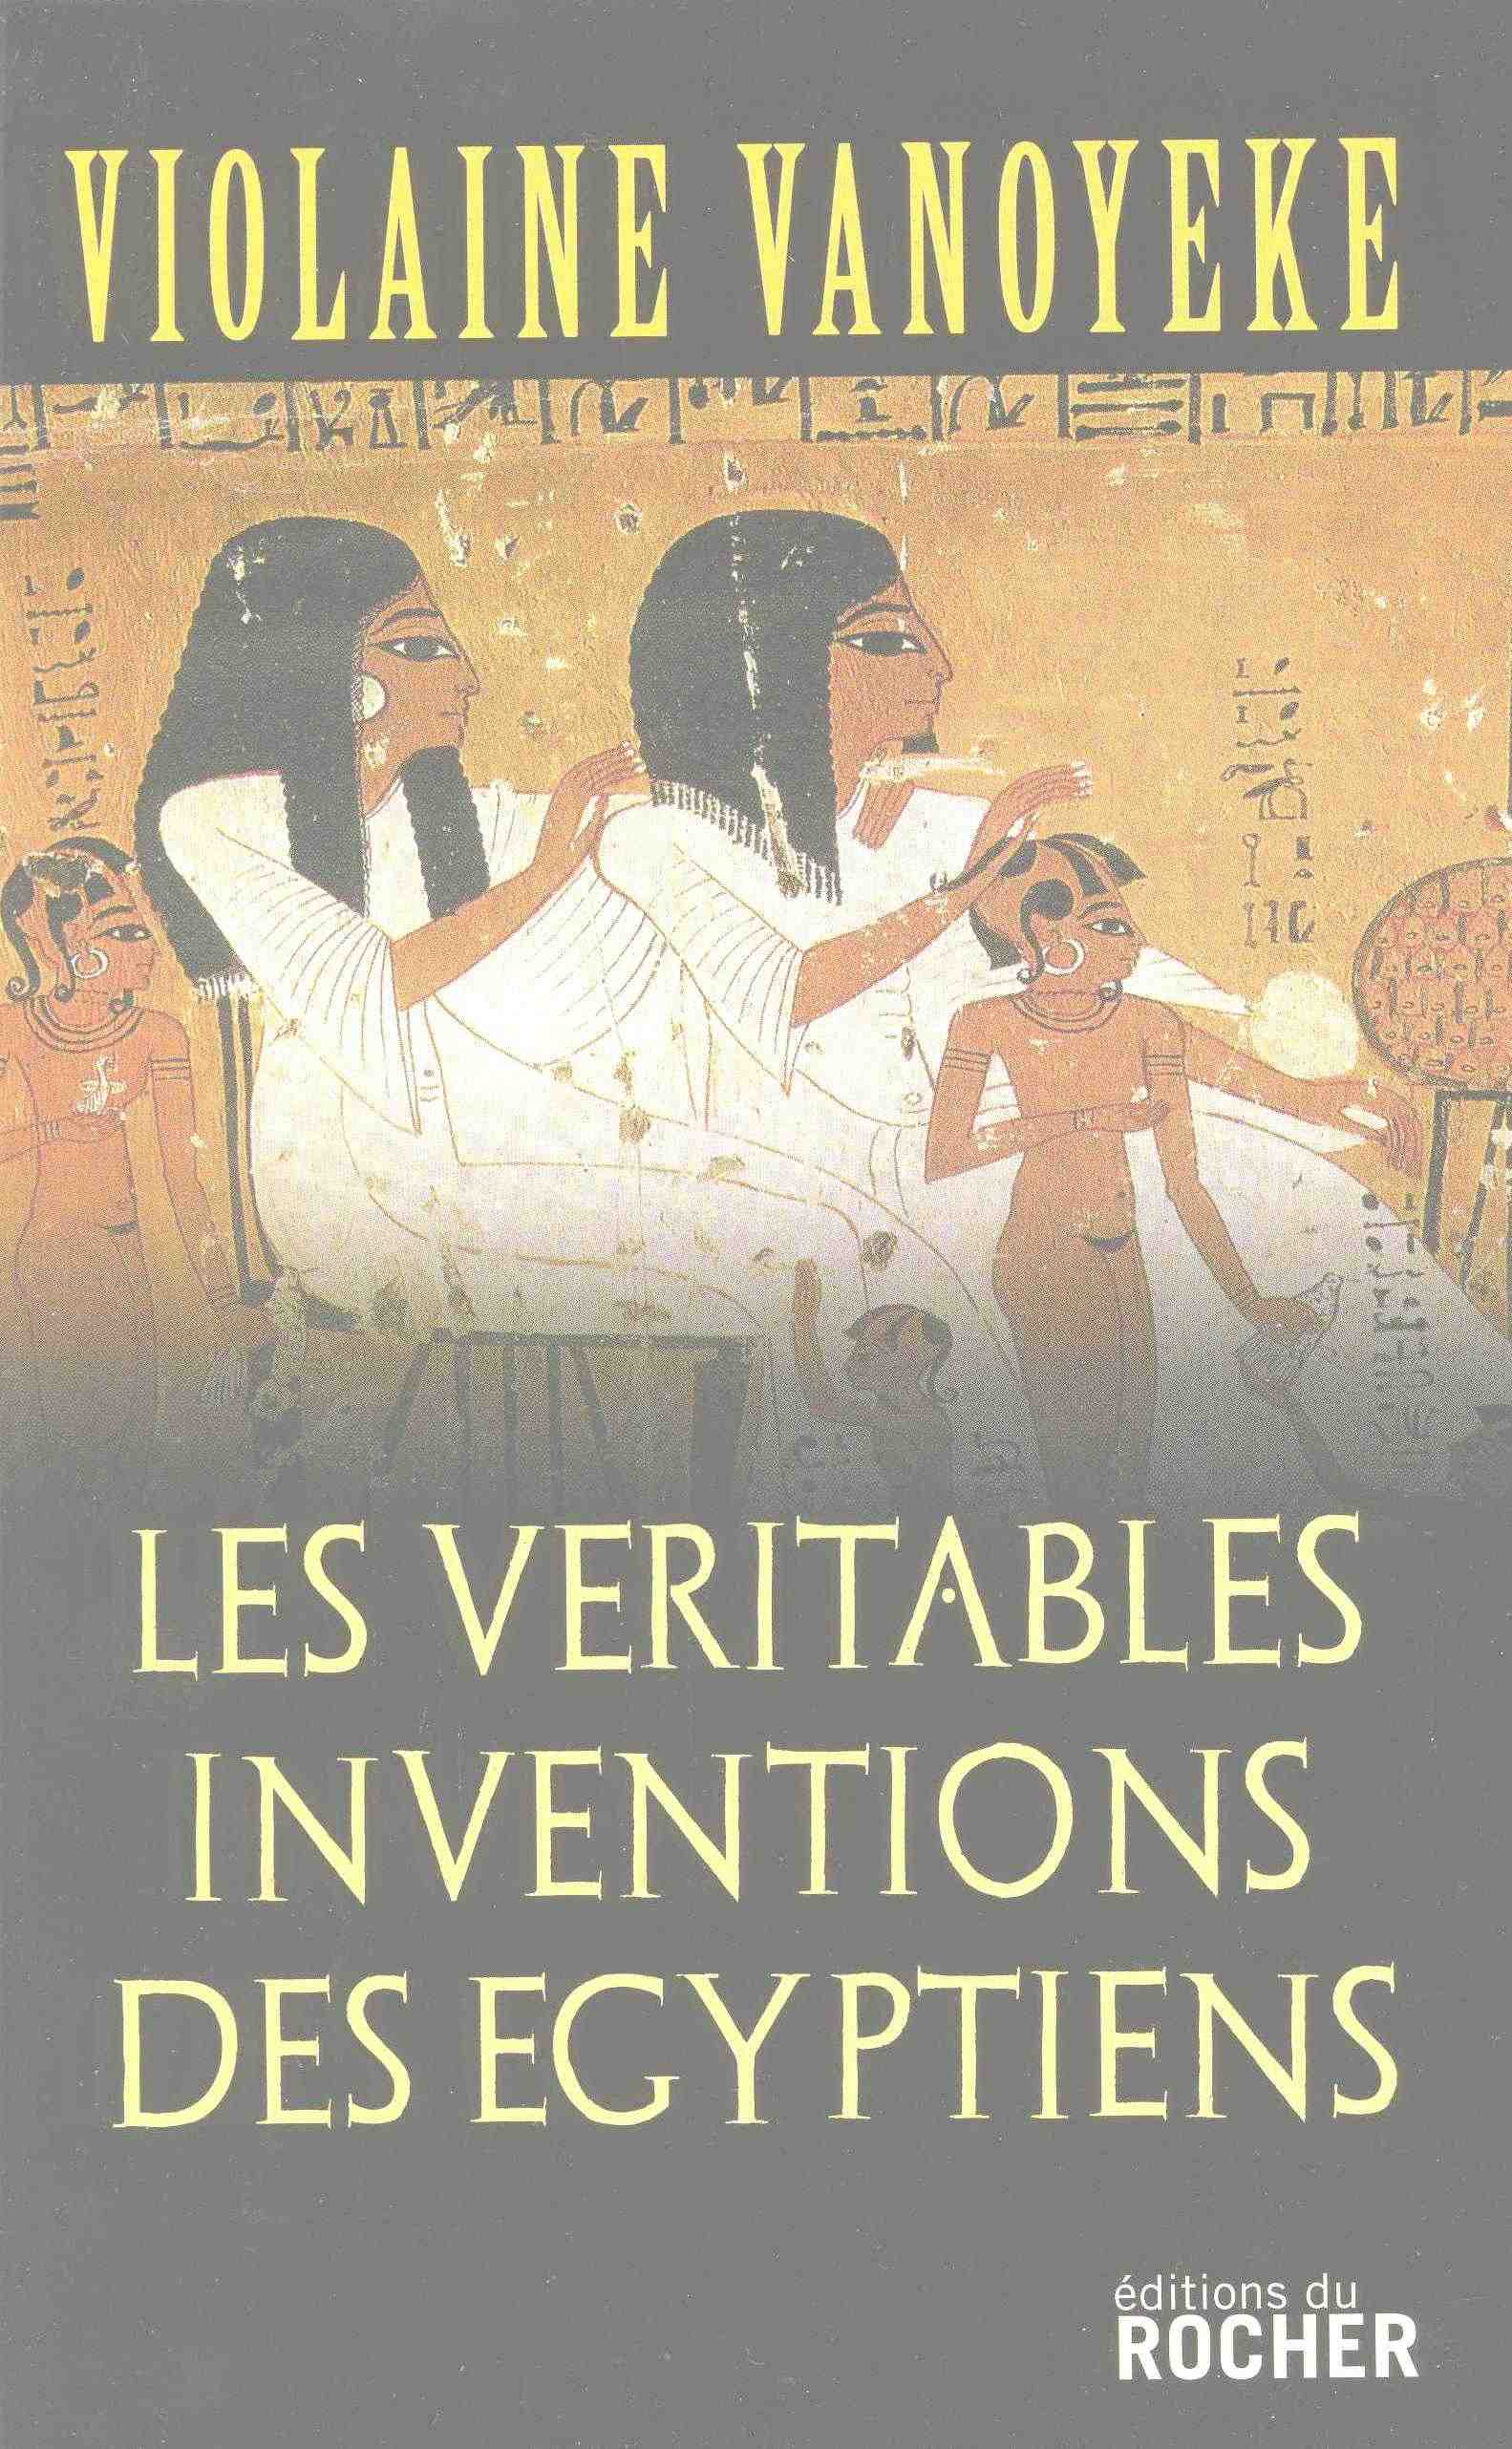 Les véritables inventions des Egyptiens, 2007, 176 p.